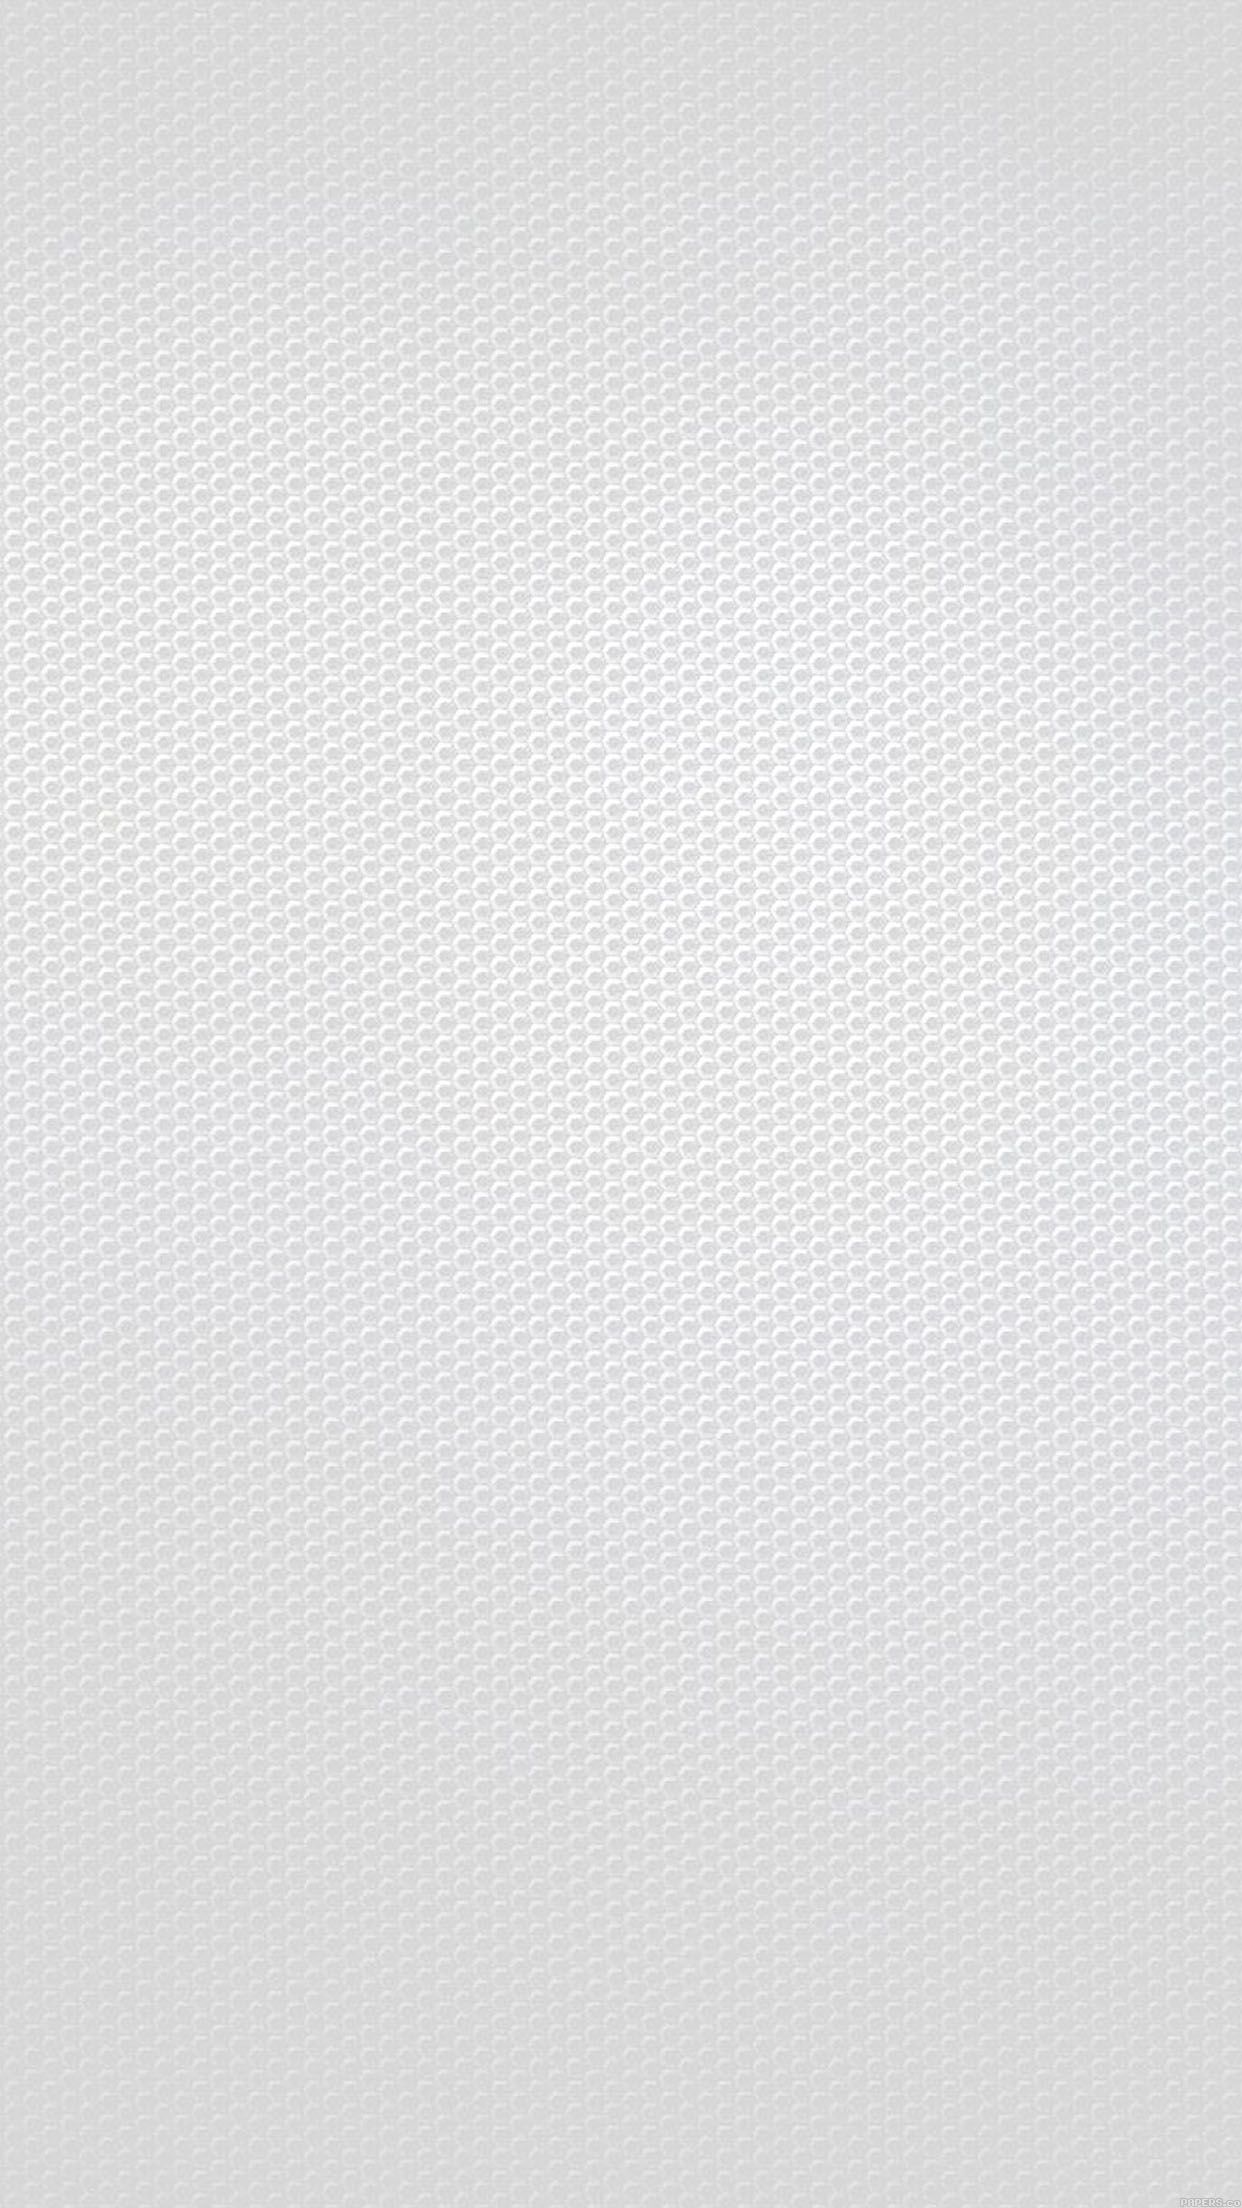 دانلود Background لونه زنبوری خاکستری برای اپل